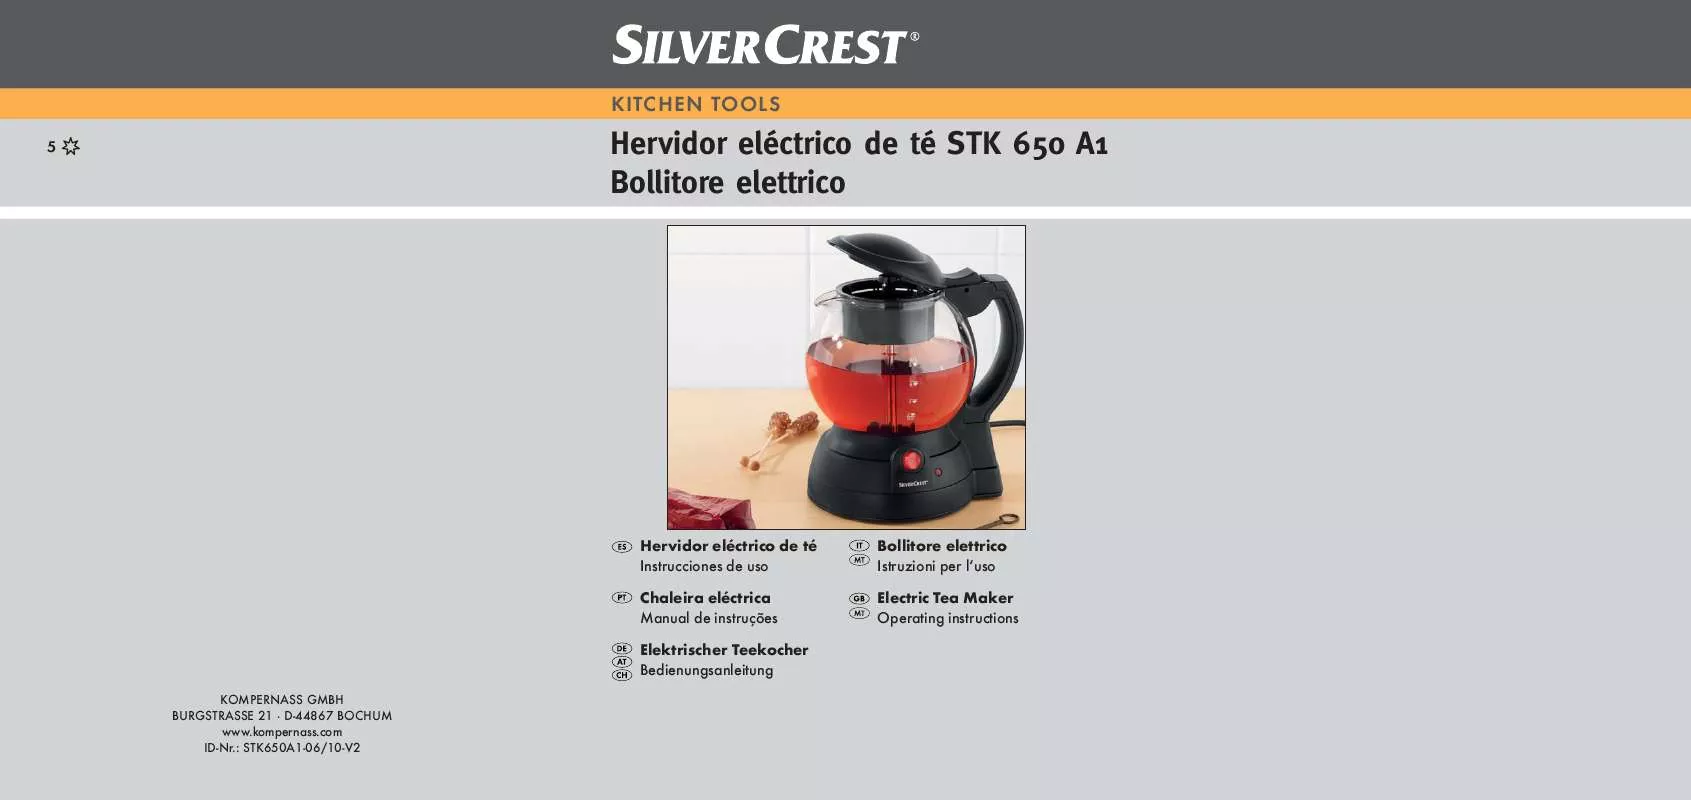 Mode d'emploi SILVERCREST STK 650 A1 ELECTRIC TEA MAKER